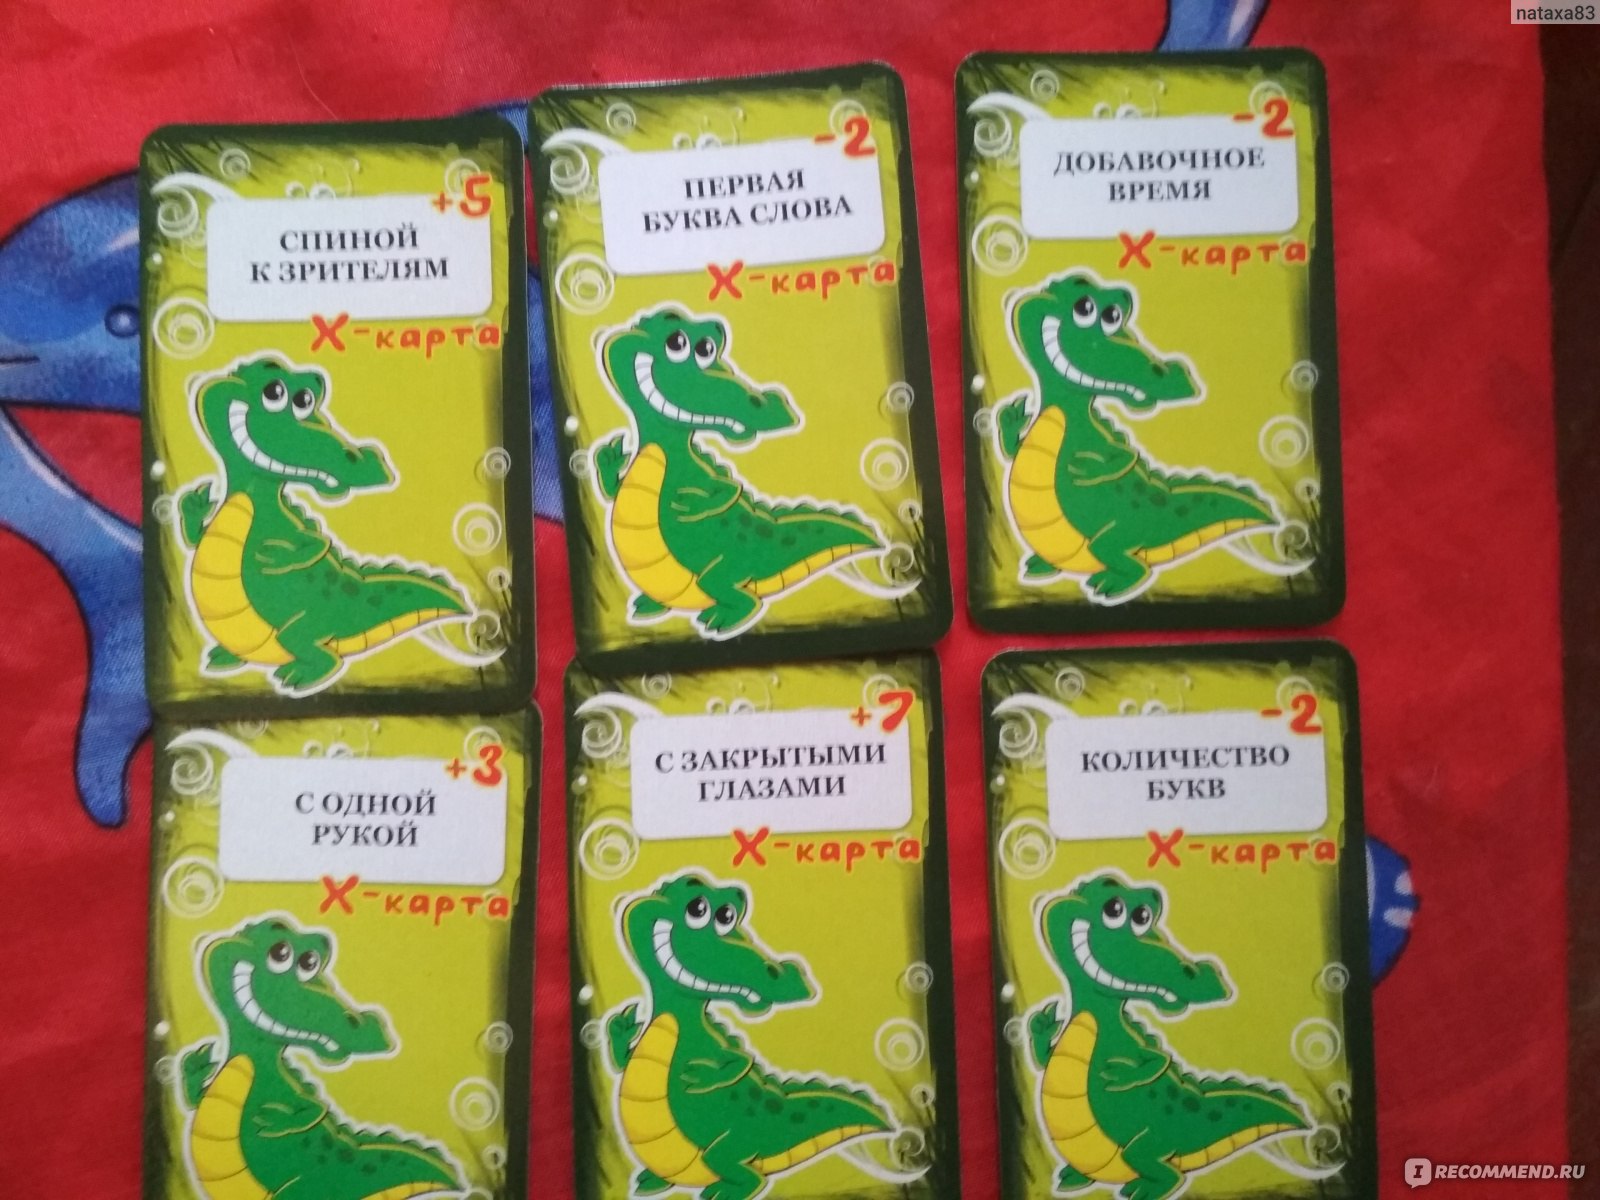 Игра крокодил примеры. Игра крокодил для веселой компании. Карты игральные "Крокодильчик". Карточки для игры крокодил для веселой компании. Игра Крокодильчик для веселой компании.